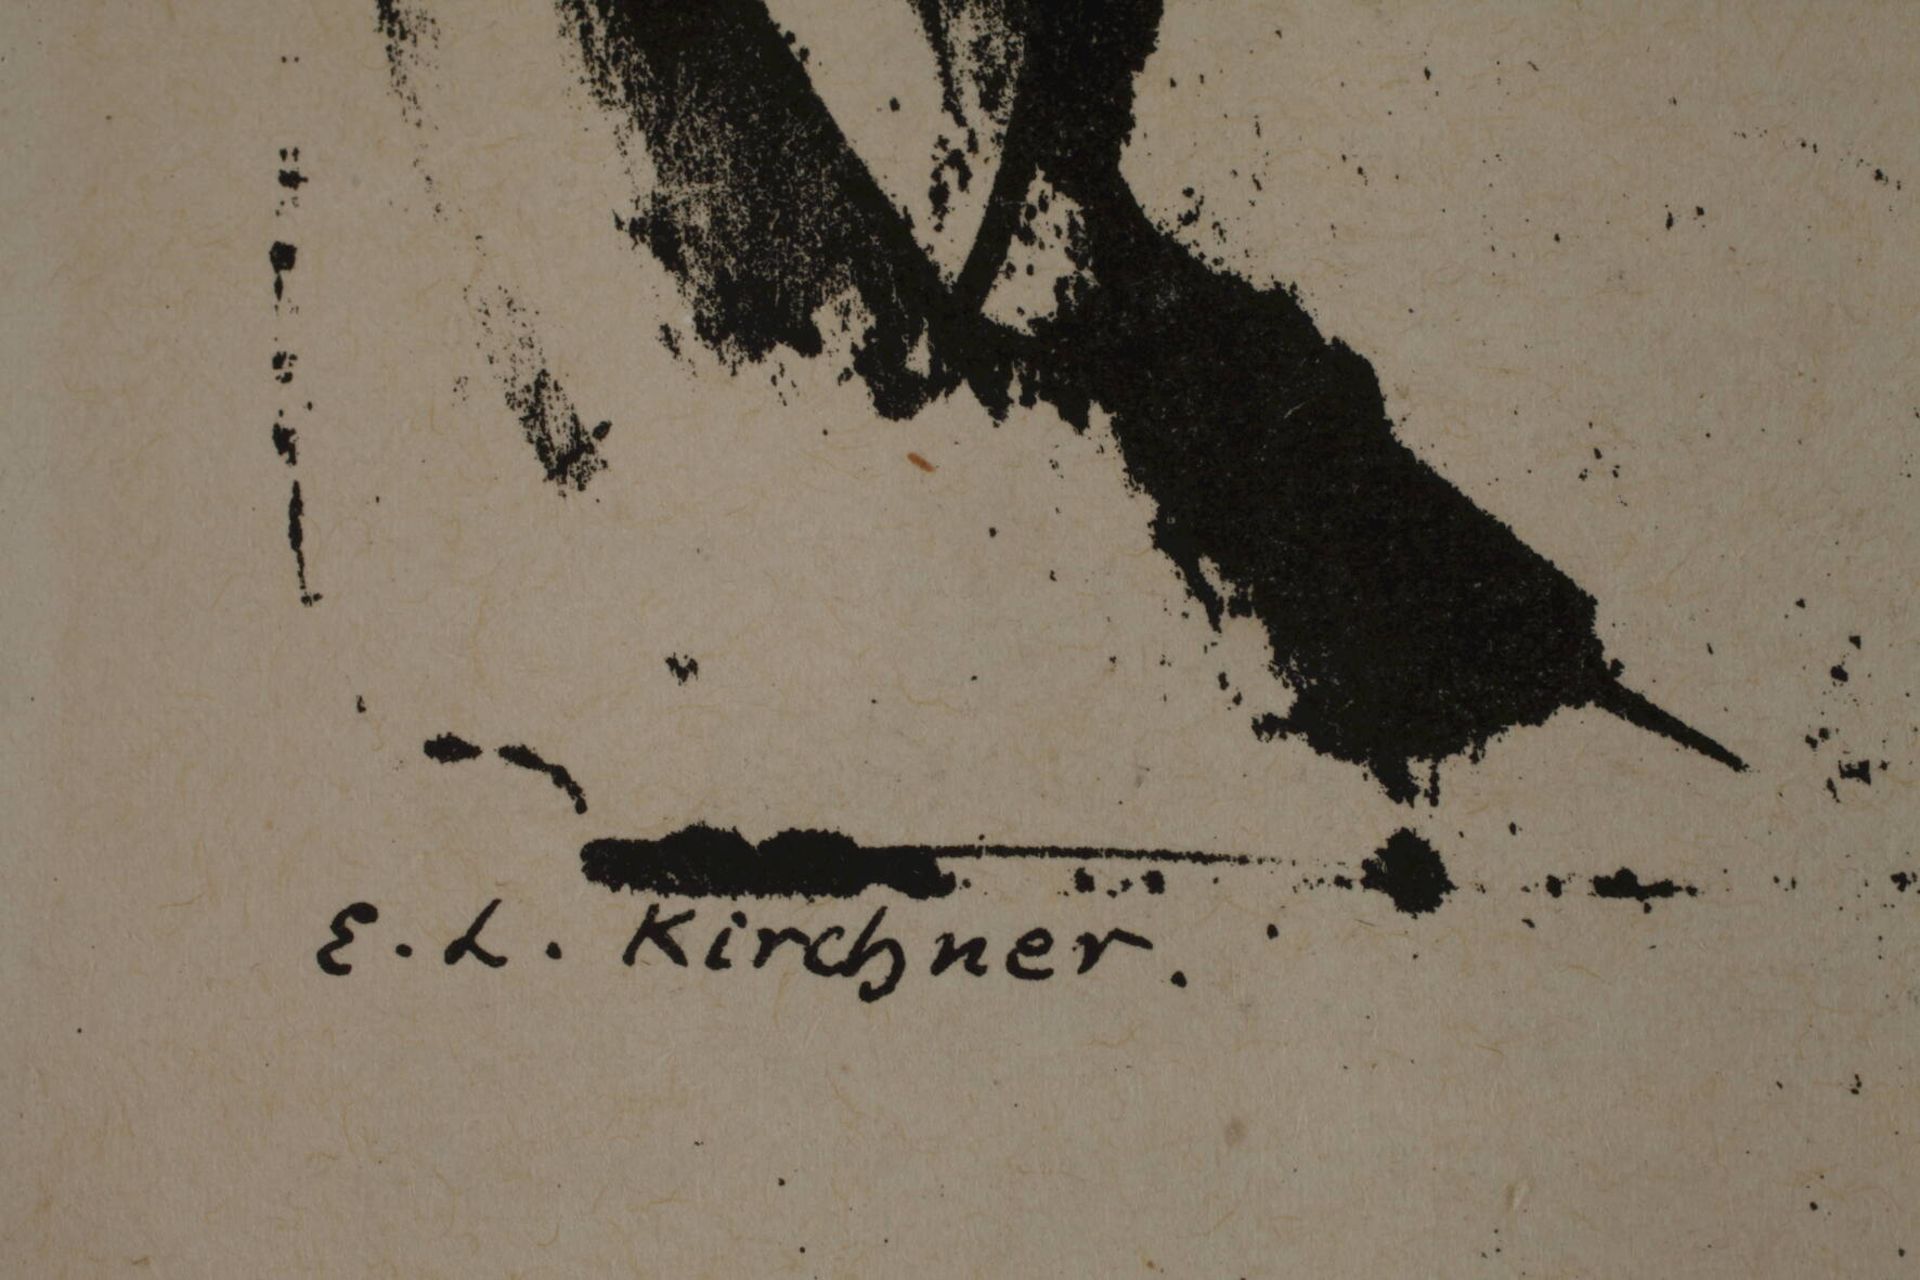 Ernst Ludwig Kirchner, "Auf dem Kasernenhof" - Image 3 of 6